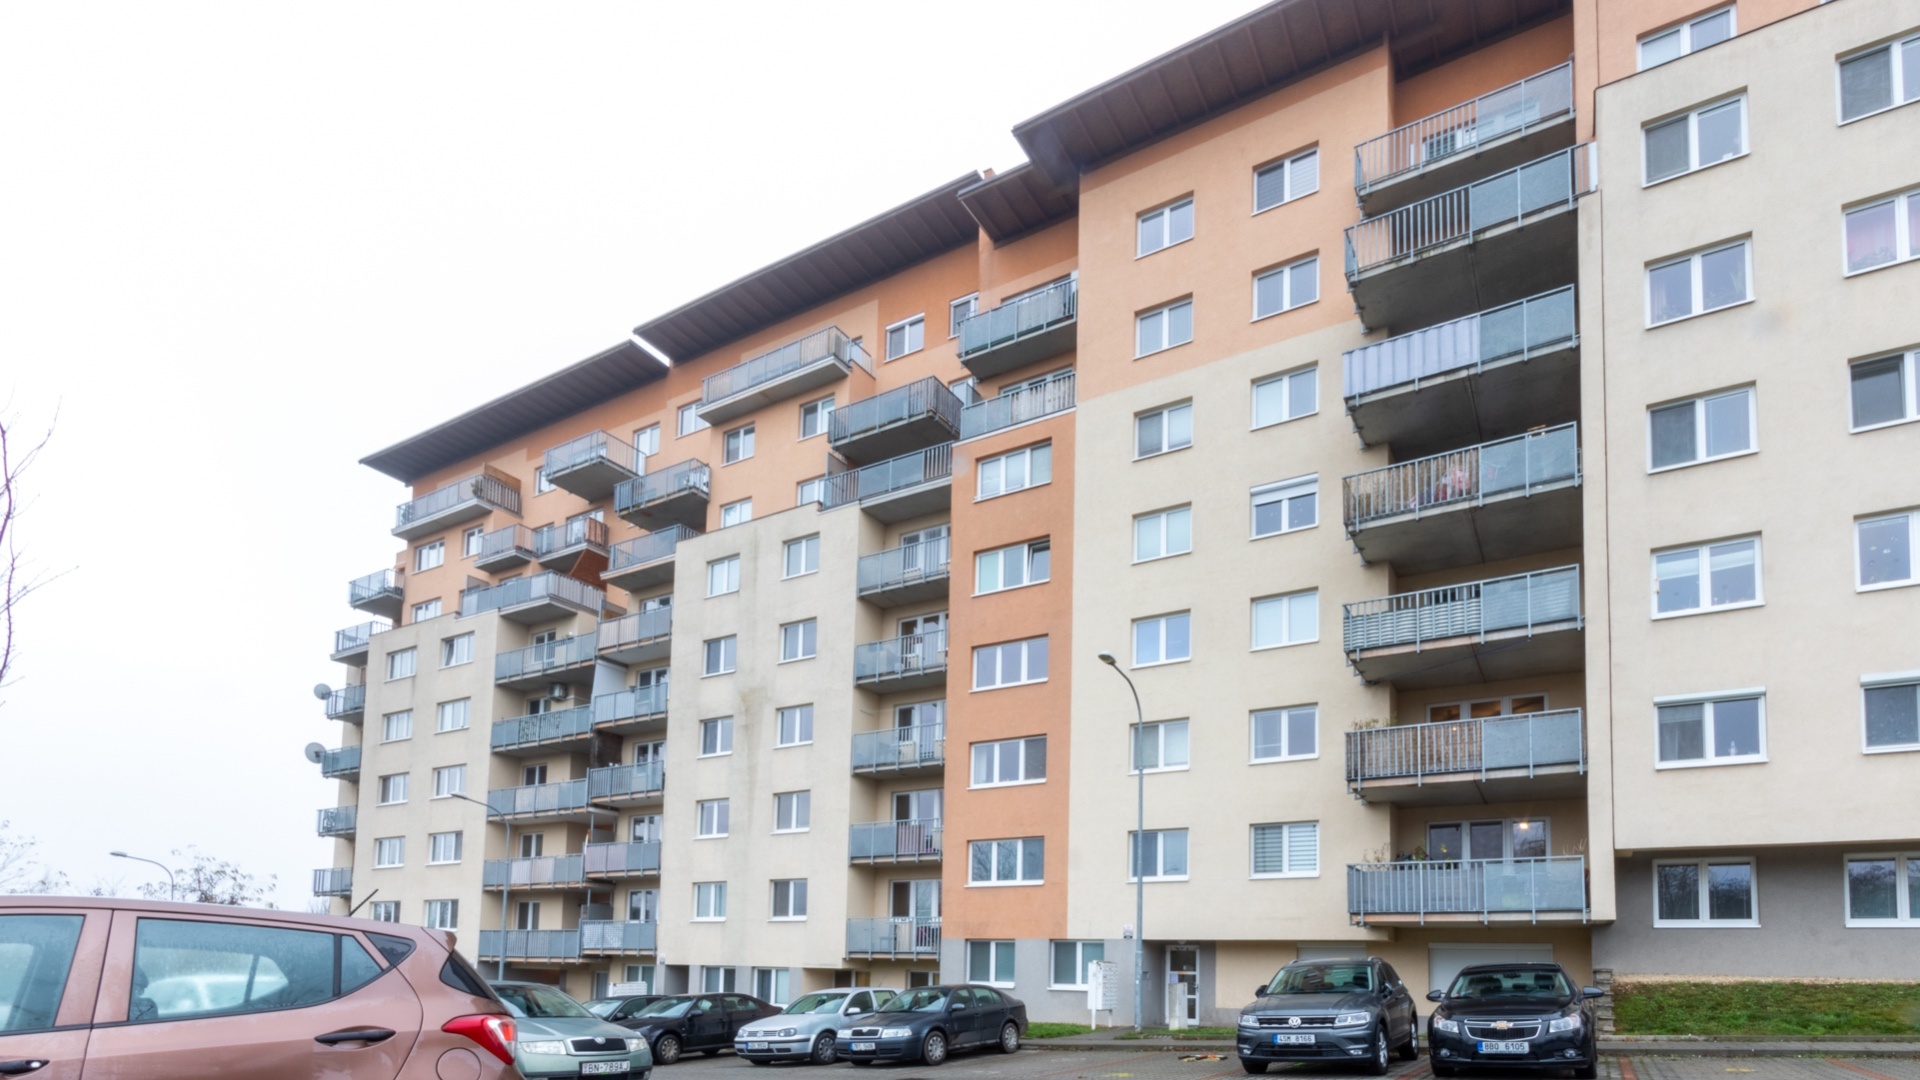 Moderní  byt 2+kk k pronájmu - Brno-Líšeň